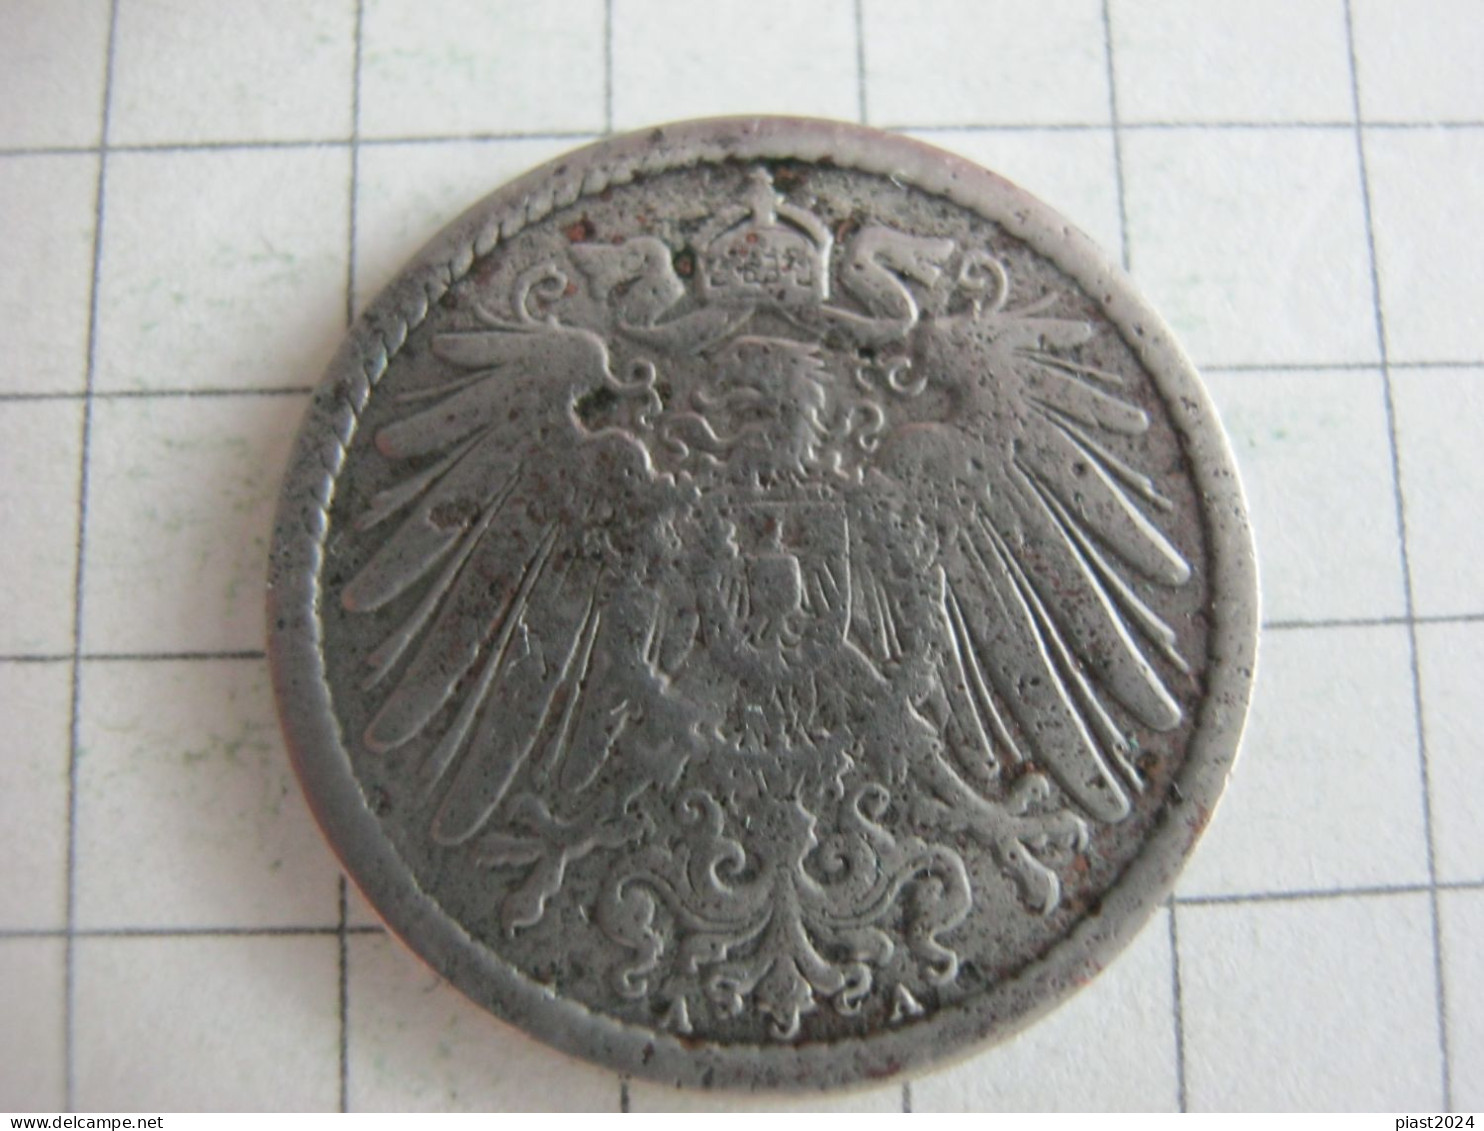 Germany 5 Pfennig 1898 A - 5 Pfennig